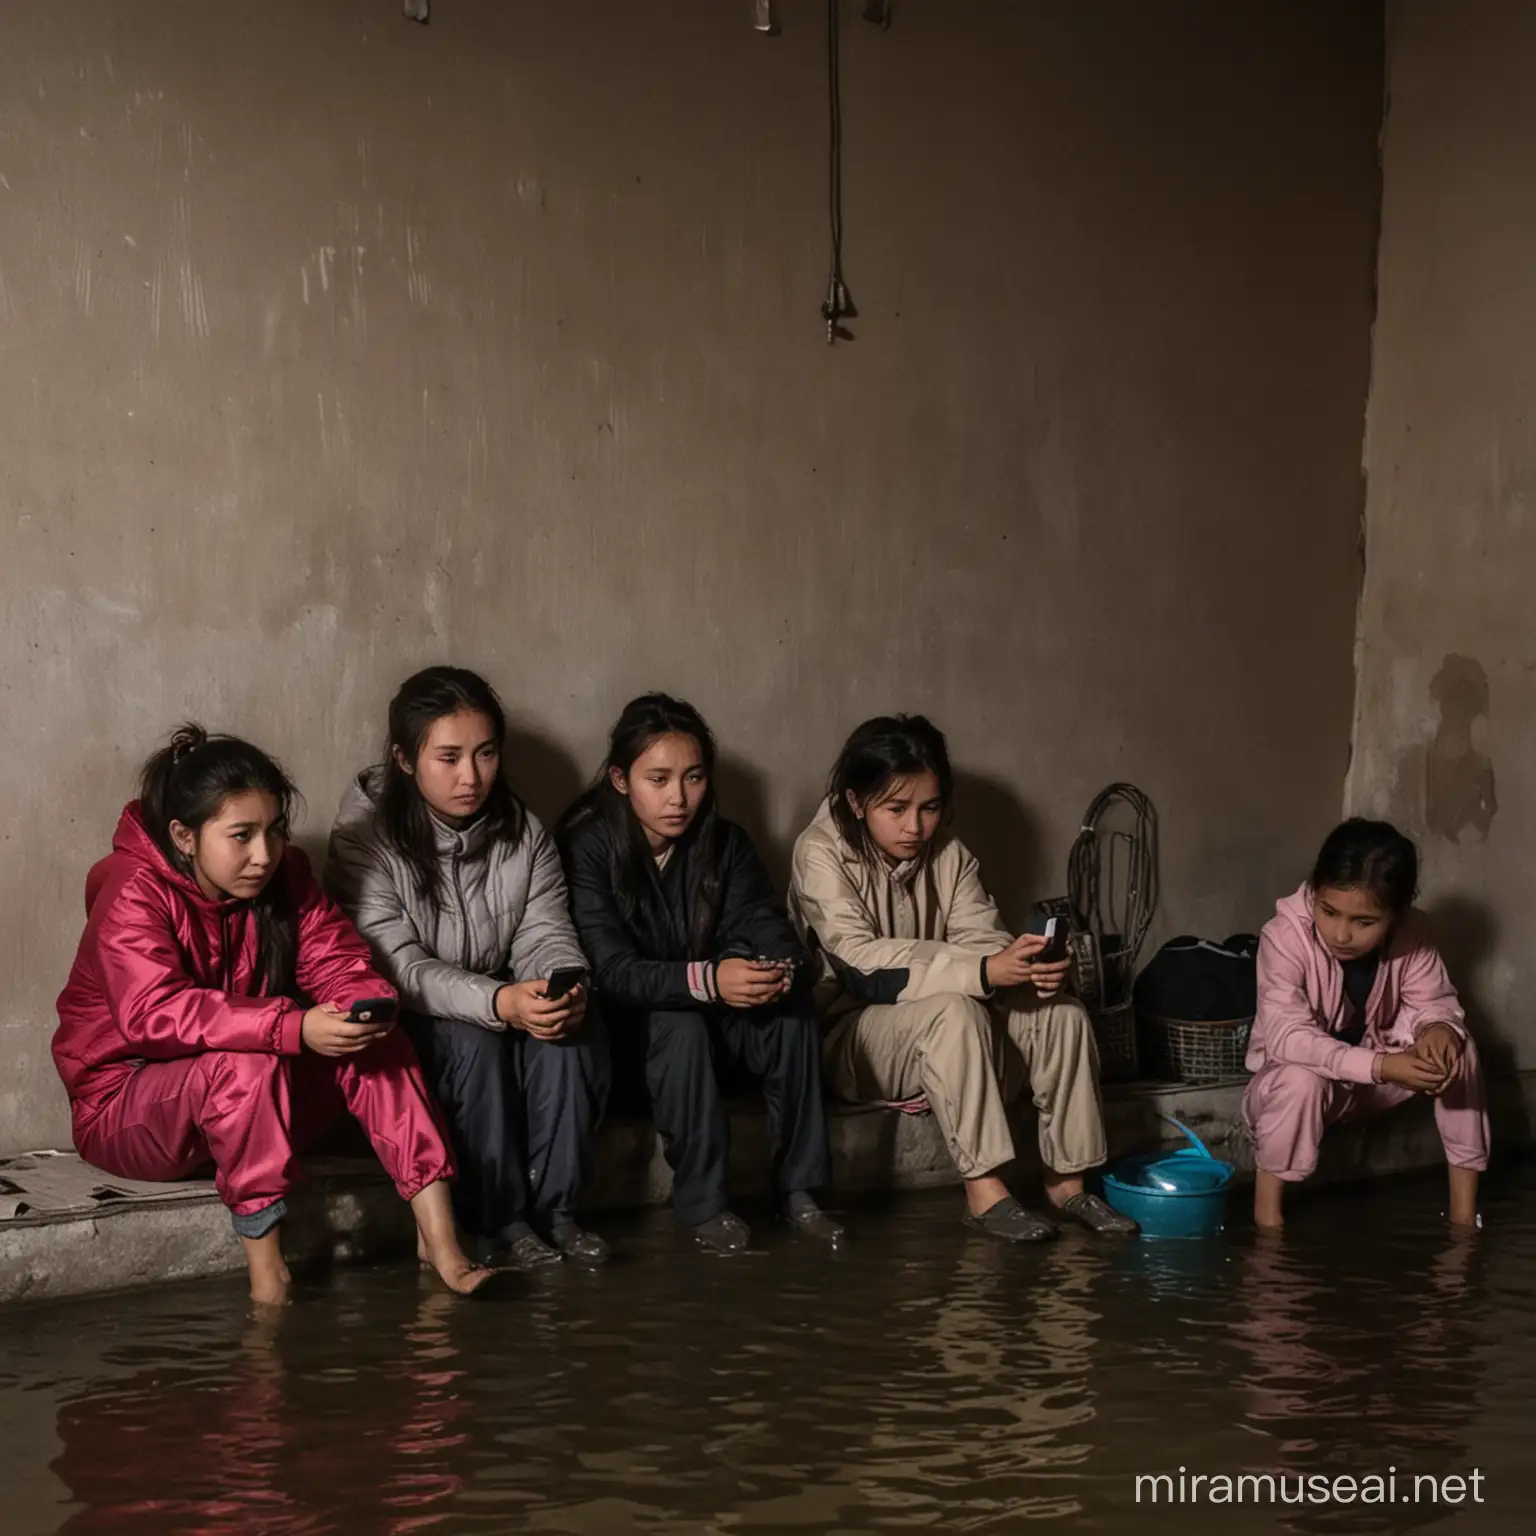 бедные казашки сидят в темноте у себя в дома, который затопило рекой и не замечают ничего и  смотрят в телефонах суд Бишимбаева


